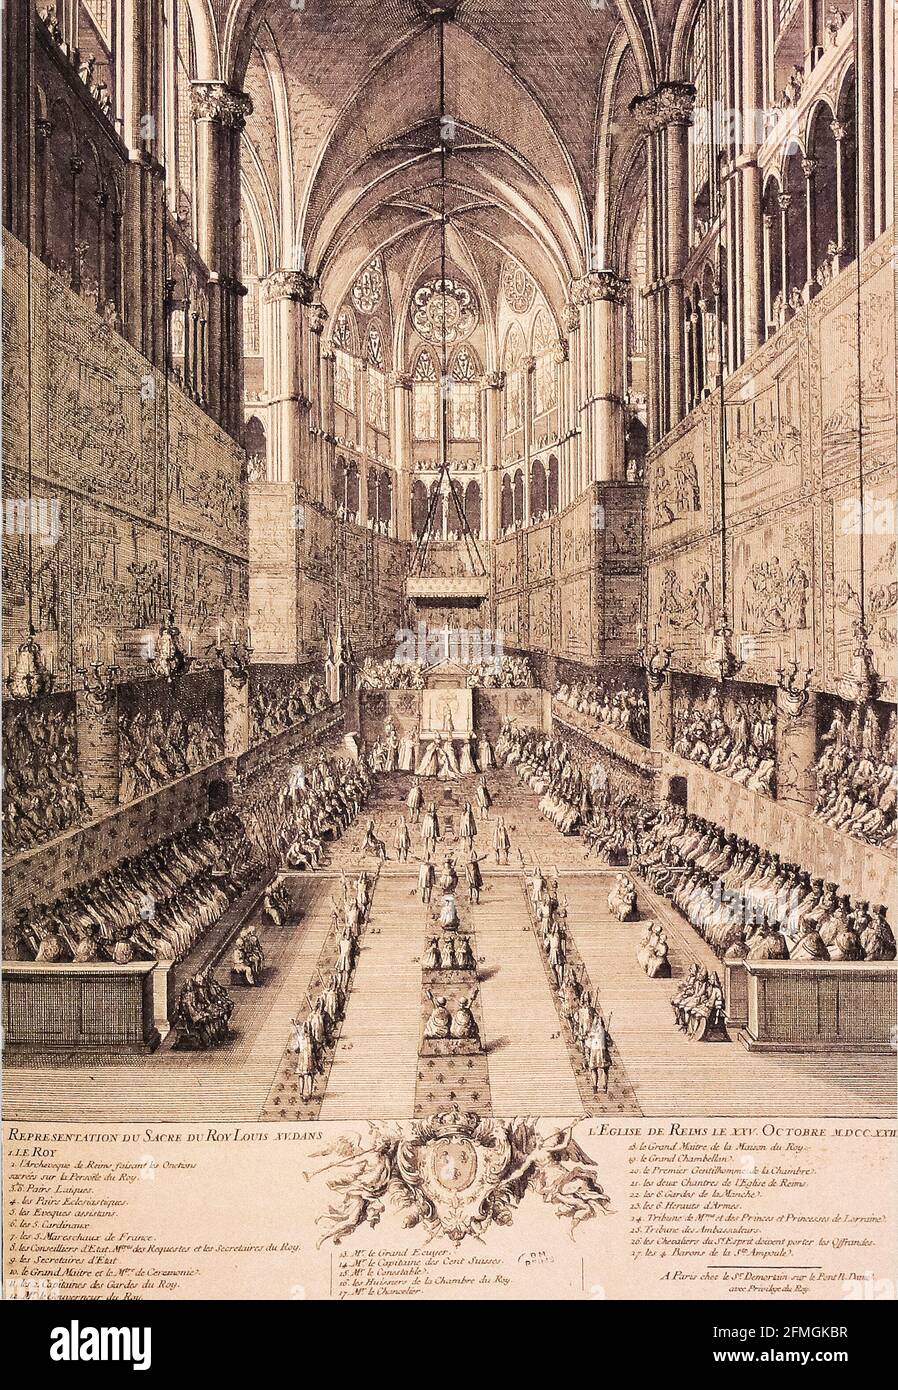 Coronation of Louis XV in Reims -  Représentation du sacre du roi Louis XV dans l'église de Reims le 25 octobre 1722 Stock Photo